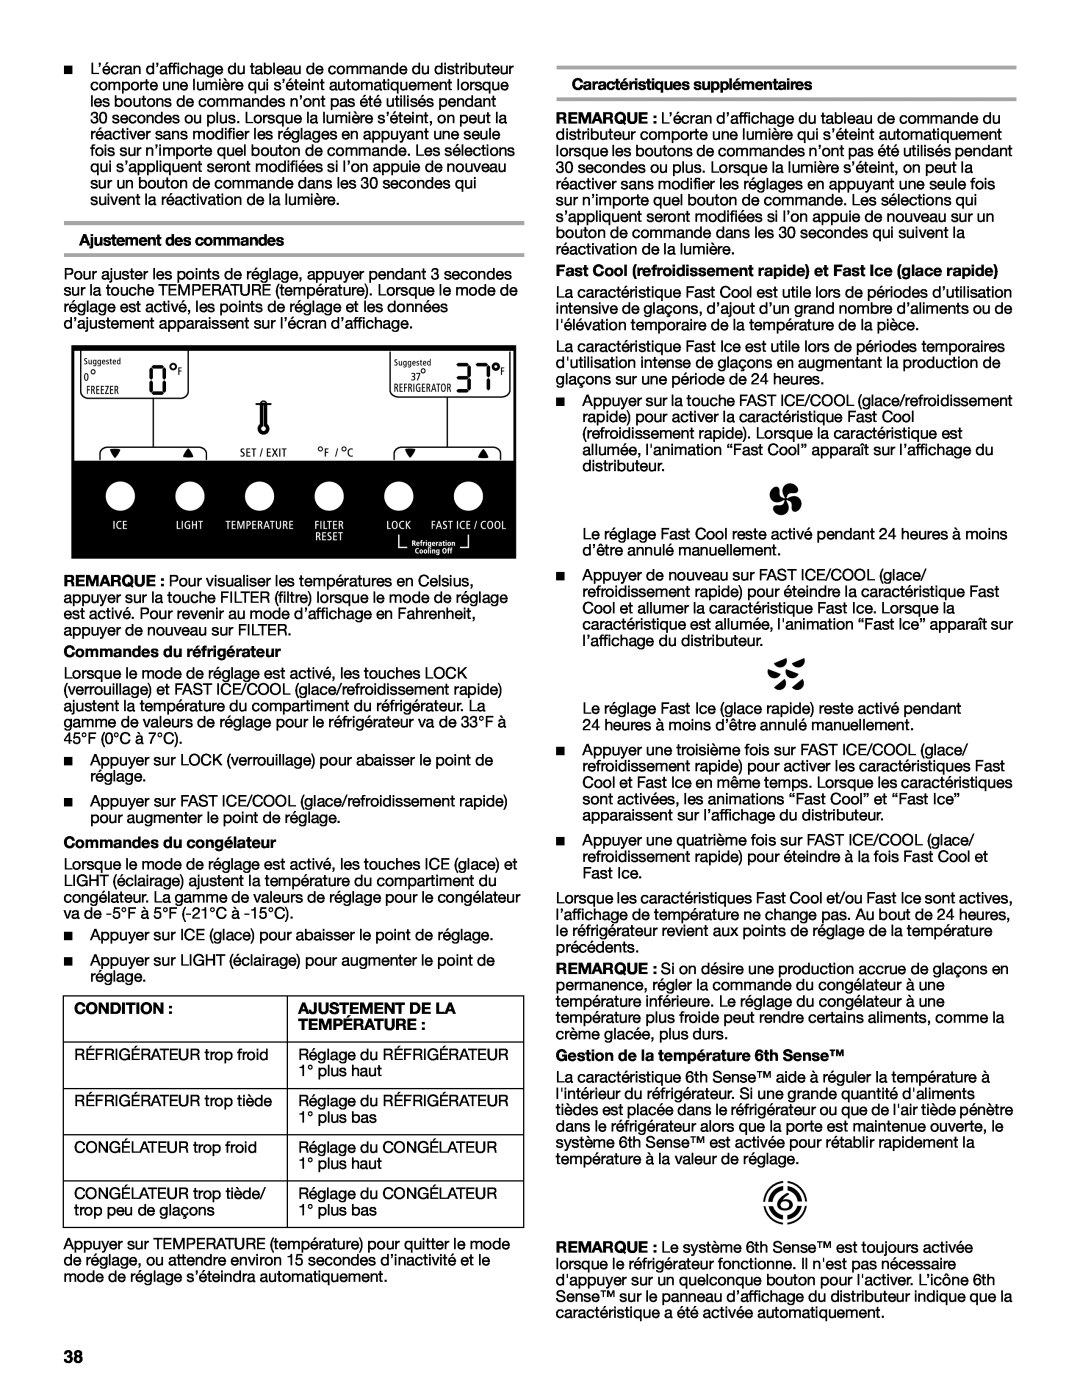 Whirlpool GS6NHAXV Ajustement des commandes, Commandes du réfrigérateur, Commandes du congélateur, Ajustement De La 